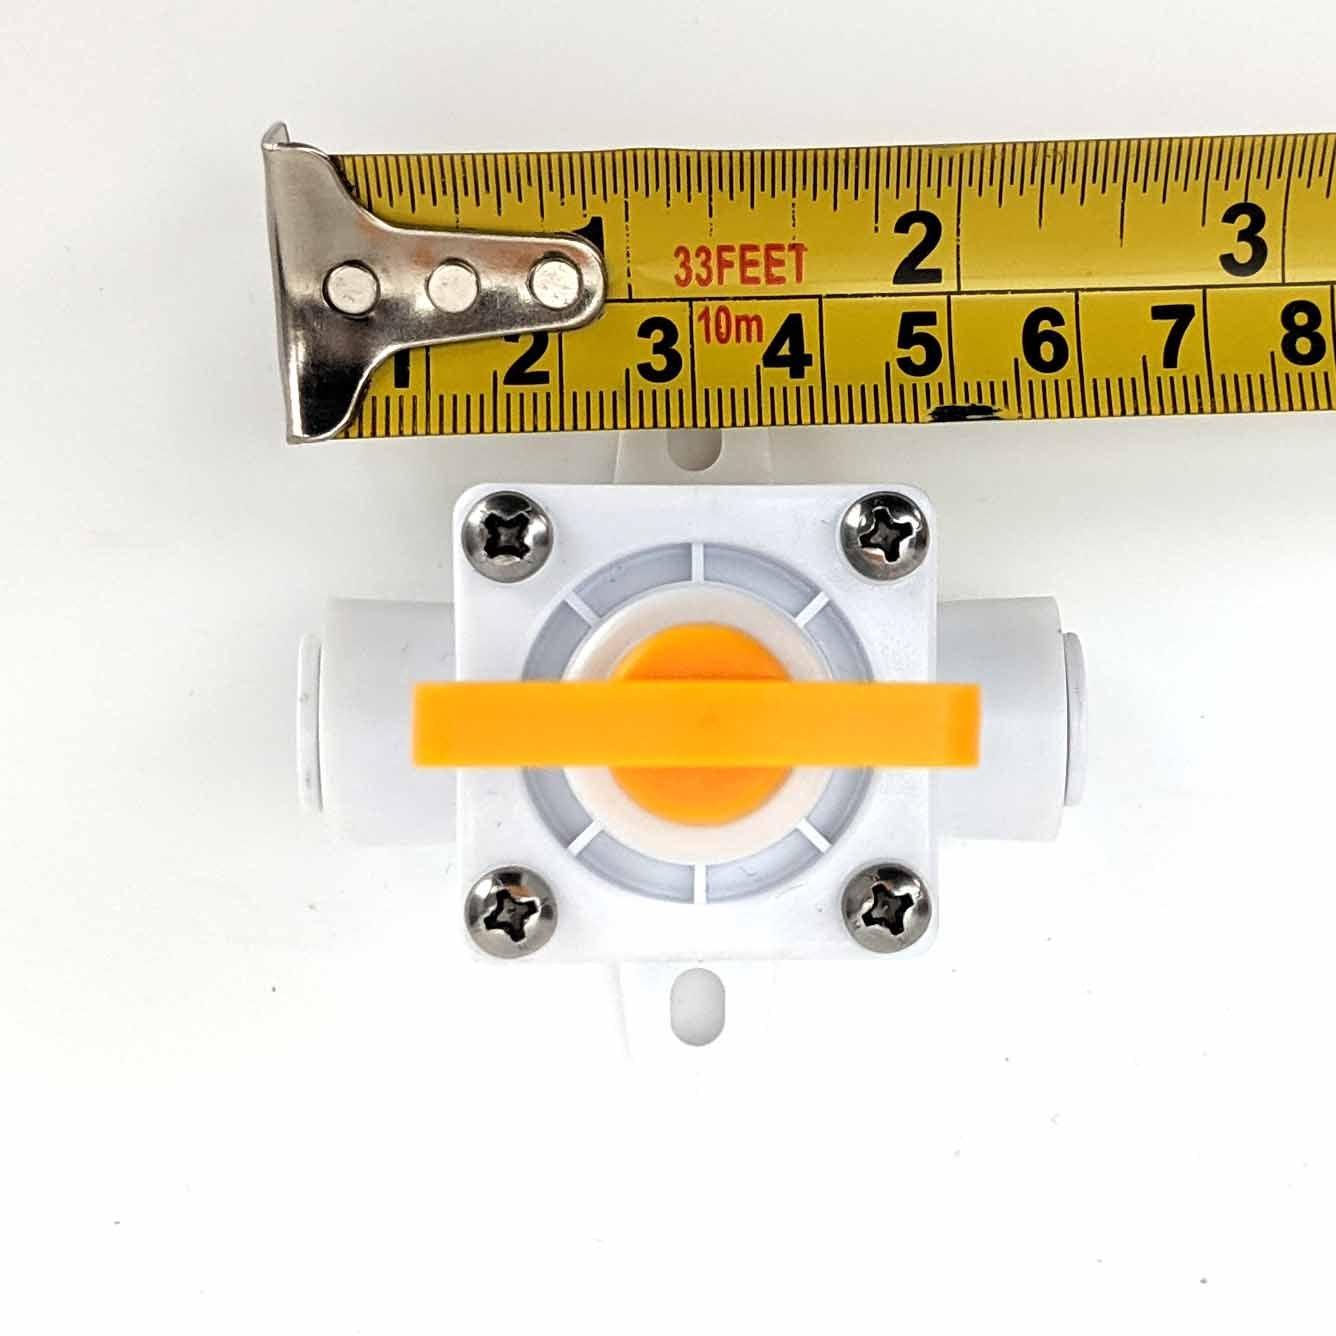 8mm duotight - (No Gauge) Inline Regulator with Yellow Adjustment Handle - KegLand